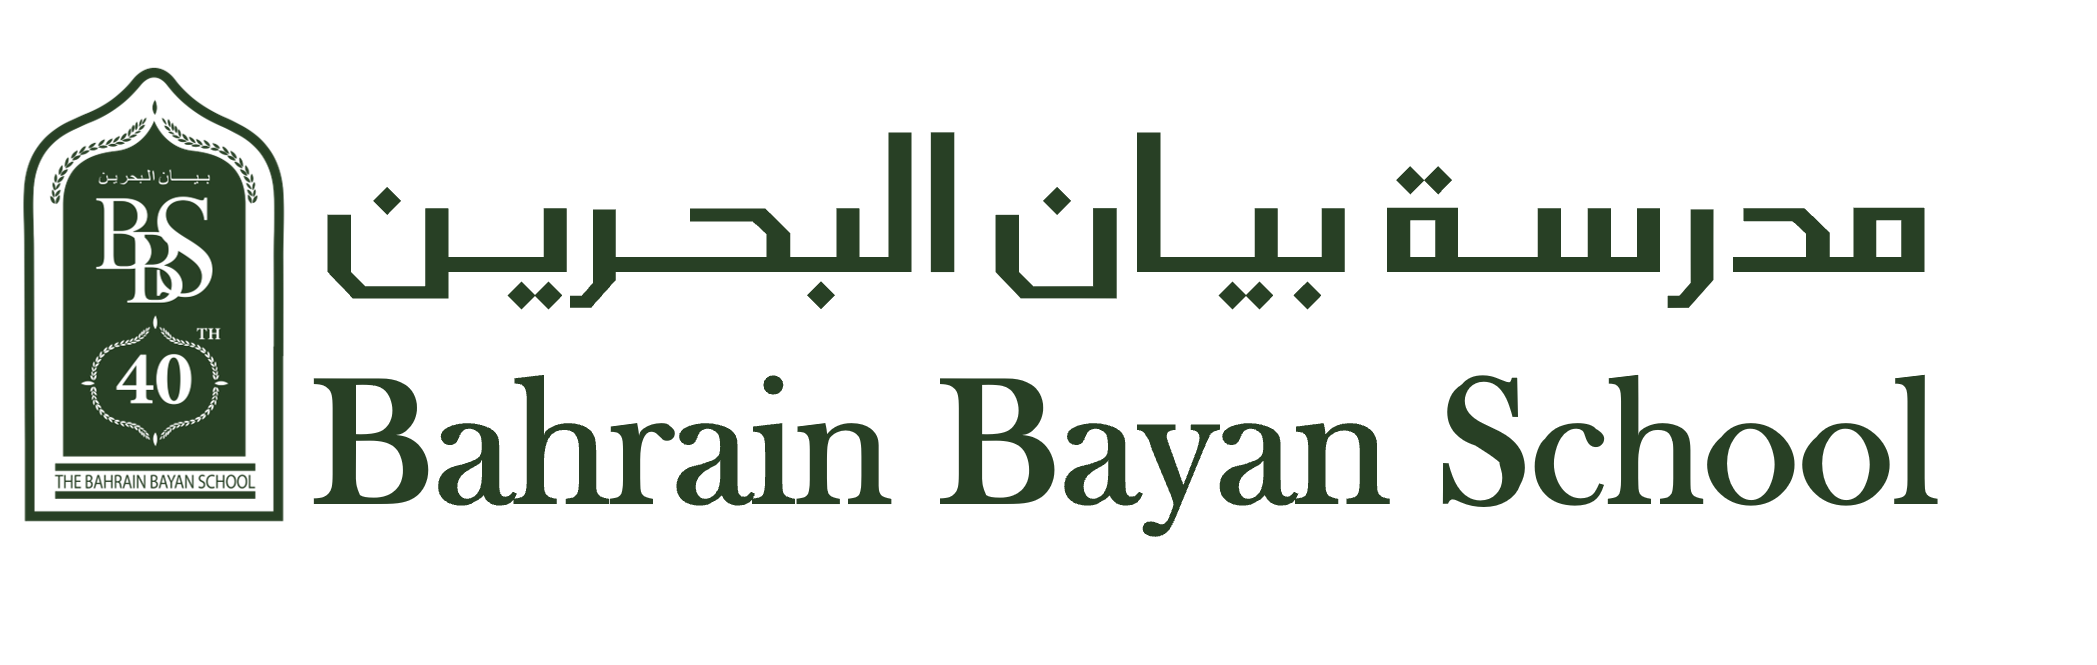 Bahrain Bayan School